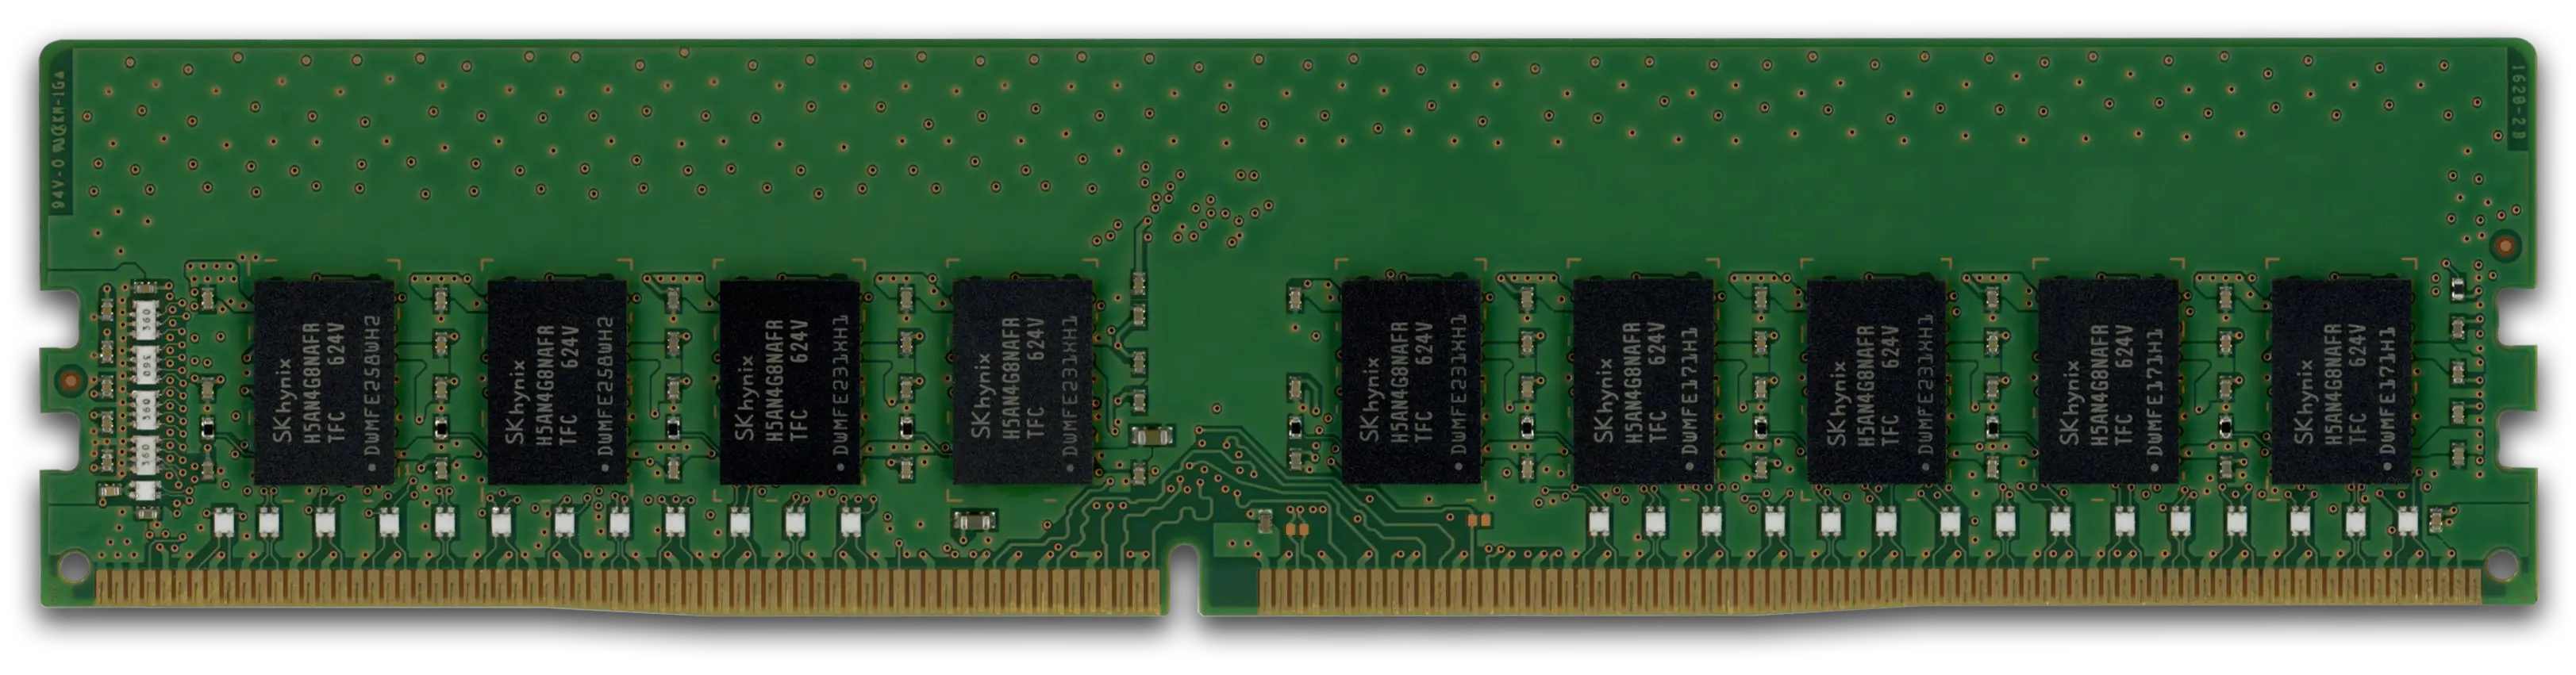 Hynix 8GB RAM-Modul DDR4 2133 MT/s PC4-2133P-E UDIMM ECC